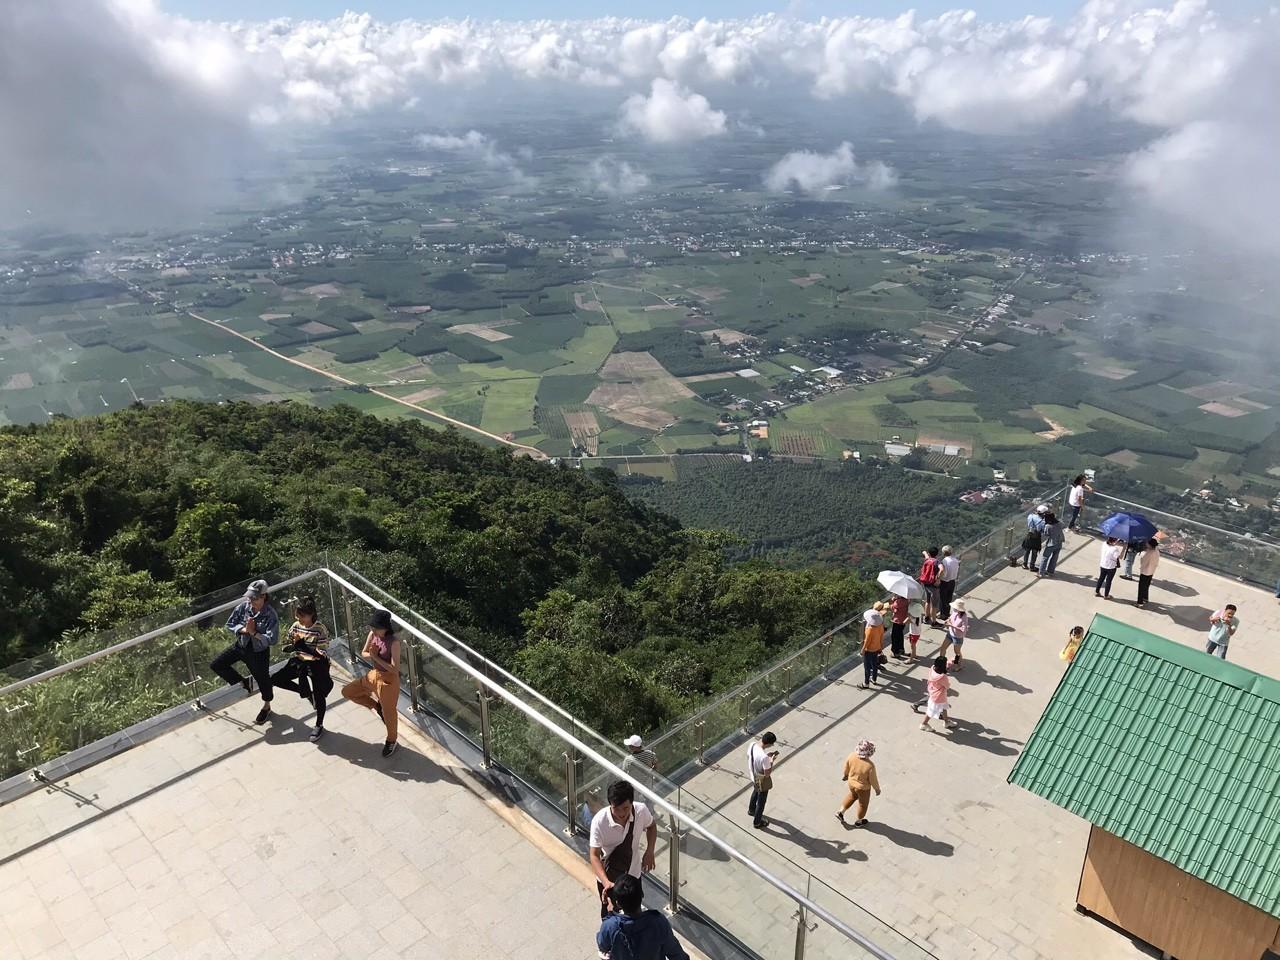 Từ đầu năm Tập đoàn Sun Group đã đầu tư hệ thống cáp treo dài 1.847m lên đỉnh Núi Bà Đen, giúp du khách check-in, ngắm toàn cảnh đồng bằng Tây Ninh.